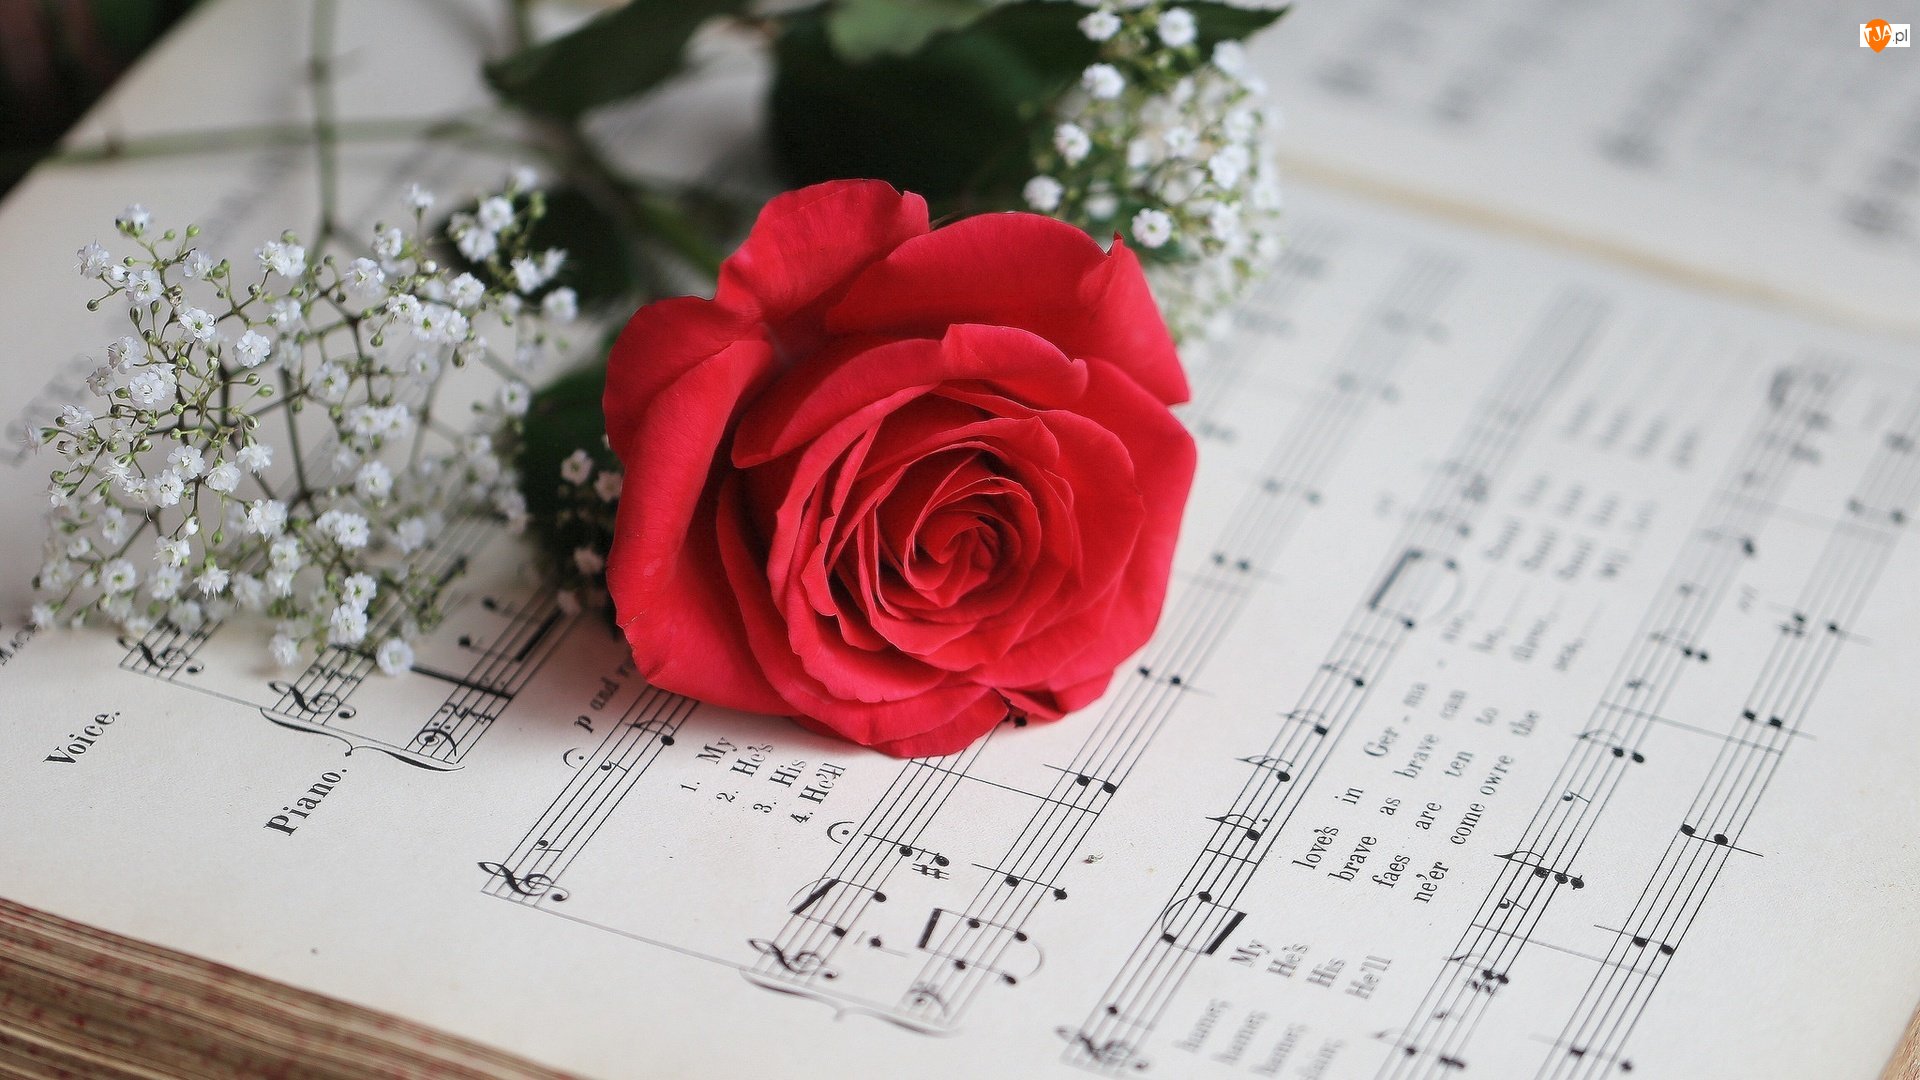 Исполнением нежных песен. Ноты и цветы. Цветы для музыканта. Красивый фон с нотами и цветами. Музыкальный букет цветов.